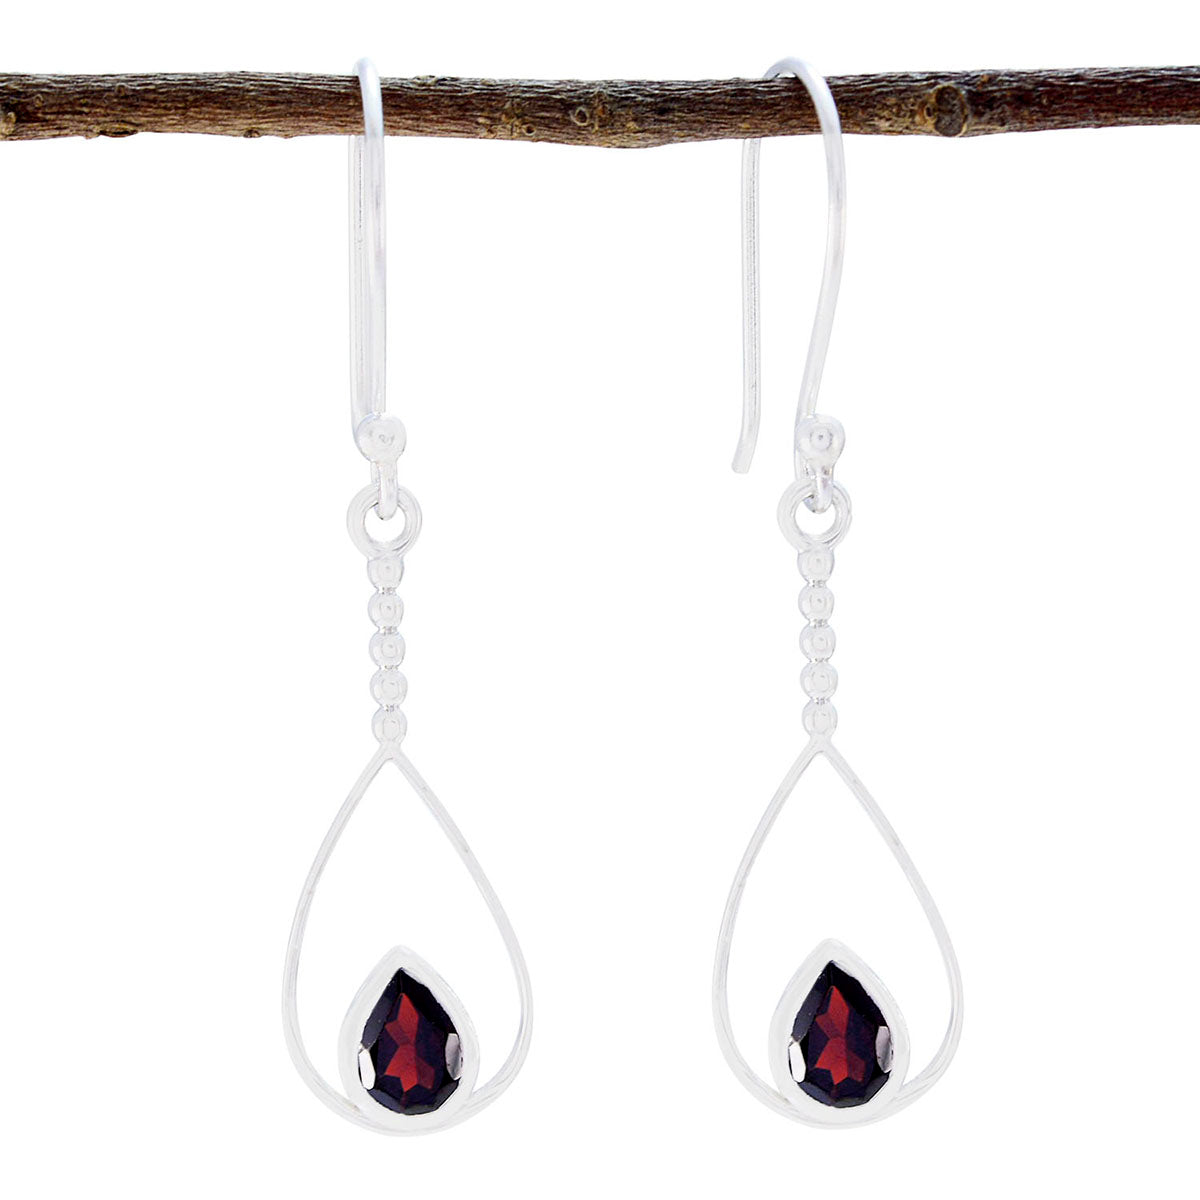 Riyo Real Gemstones Pear Faceted Red Garnet Silver Earrings gift for friend